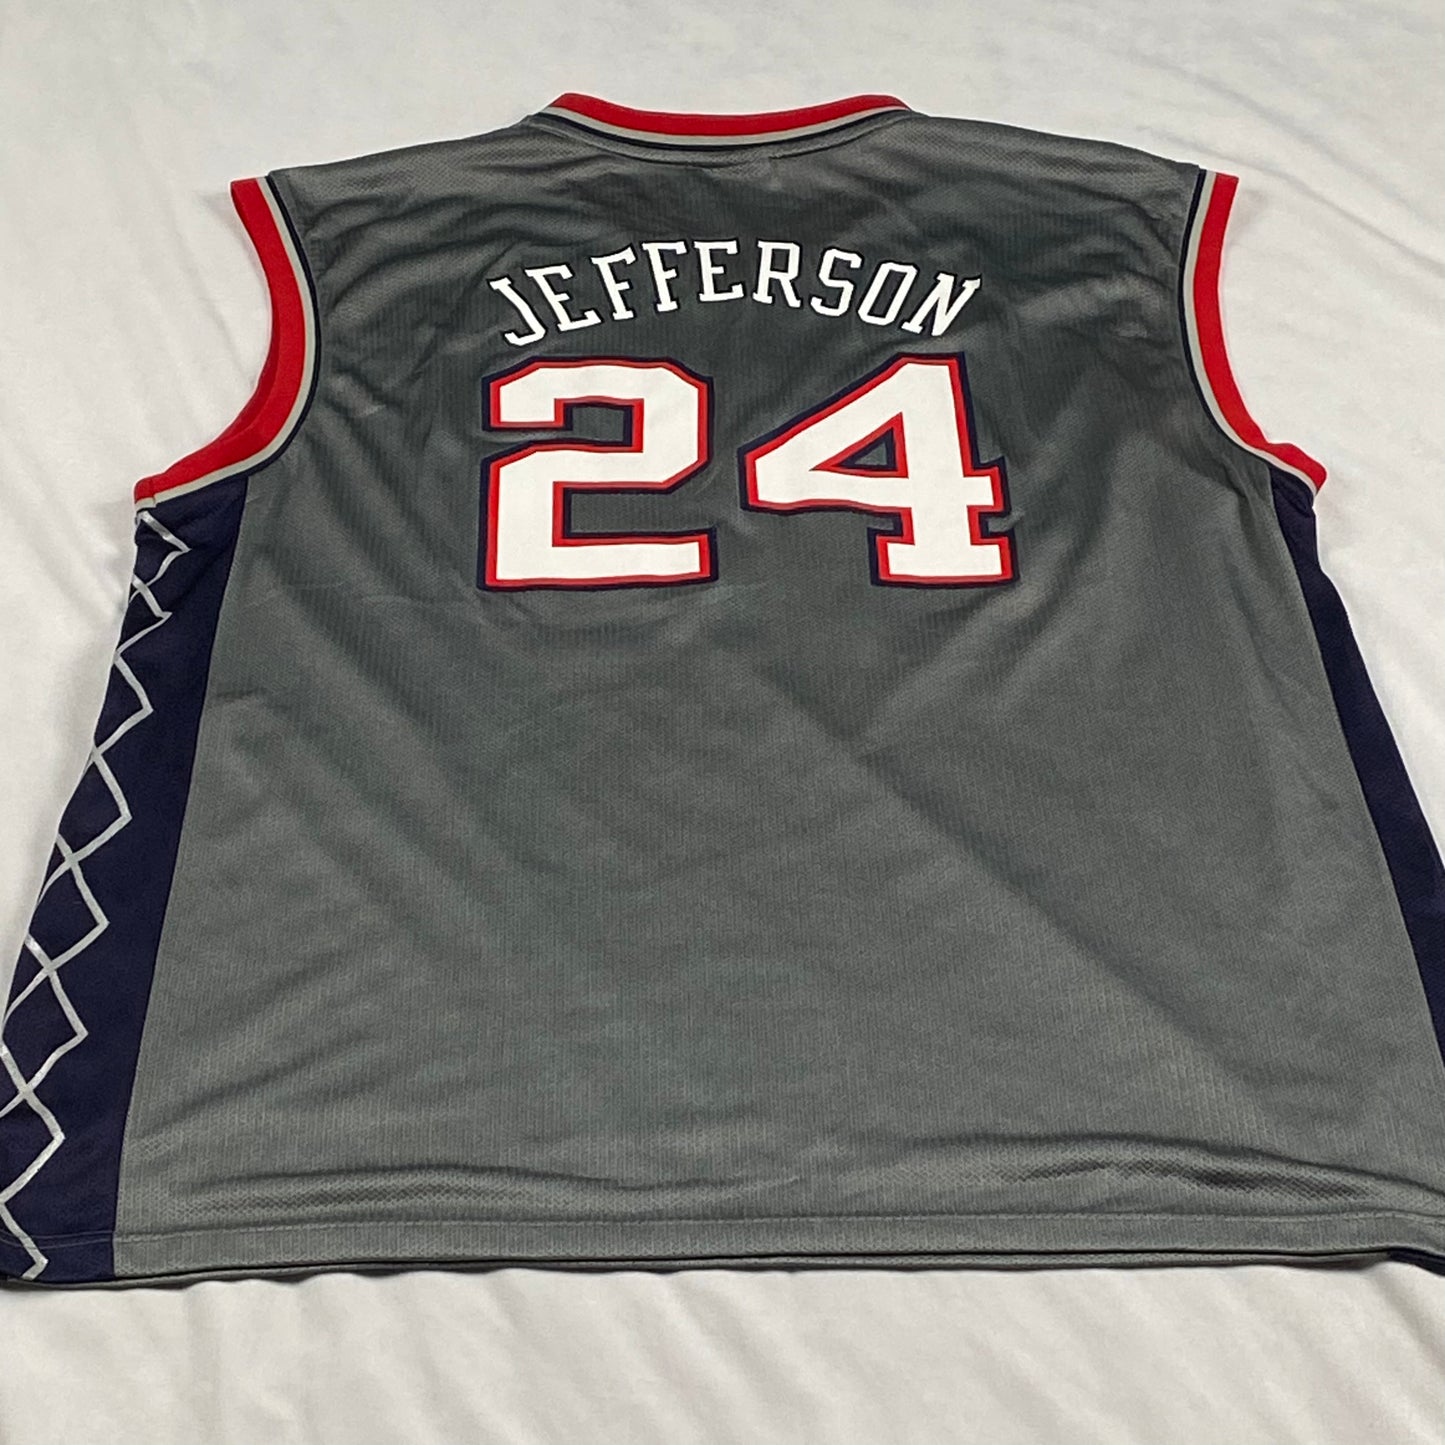 New Jersey Nets Richard Jefferson Reebok Replica NBA Basketball Jersey